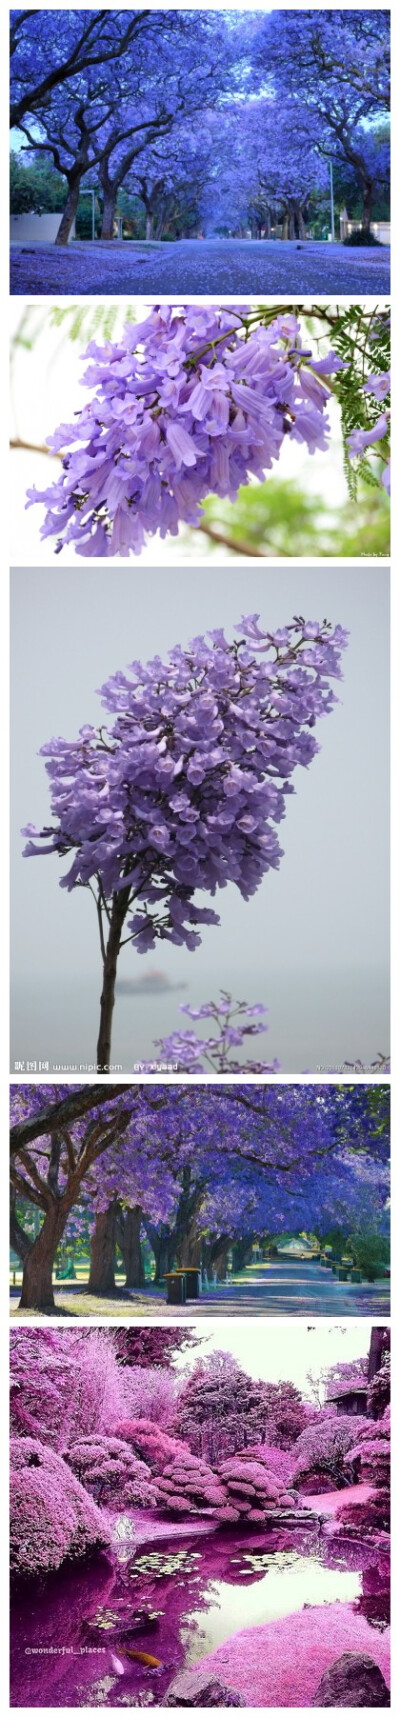 蓝花楹(学名:jacaranda mimosifolia)是紫葳科蓝花楹属的植物.